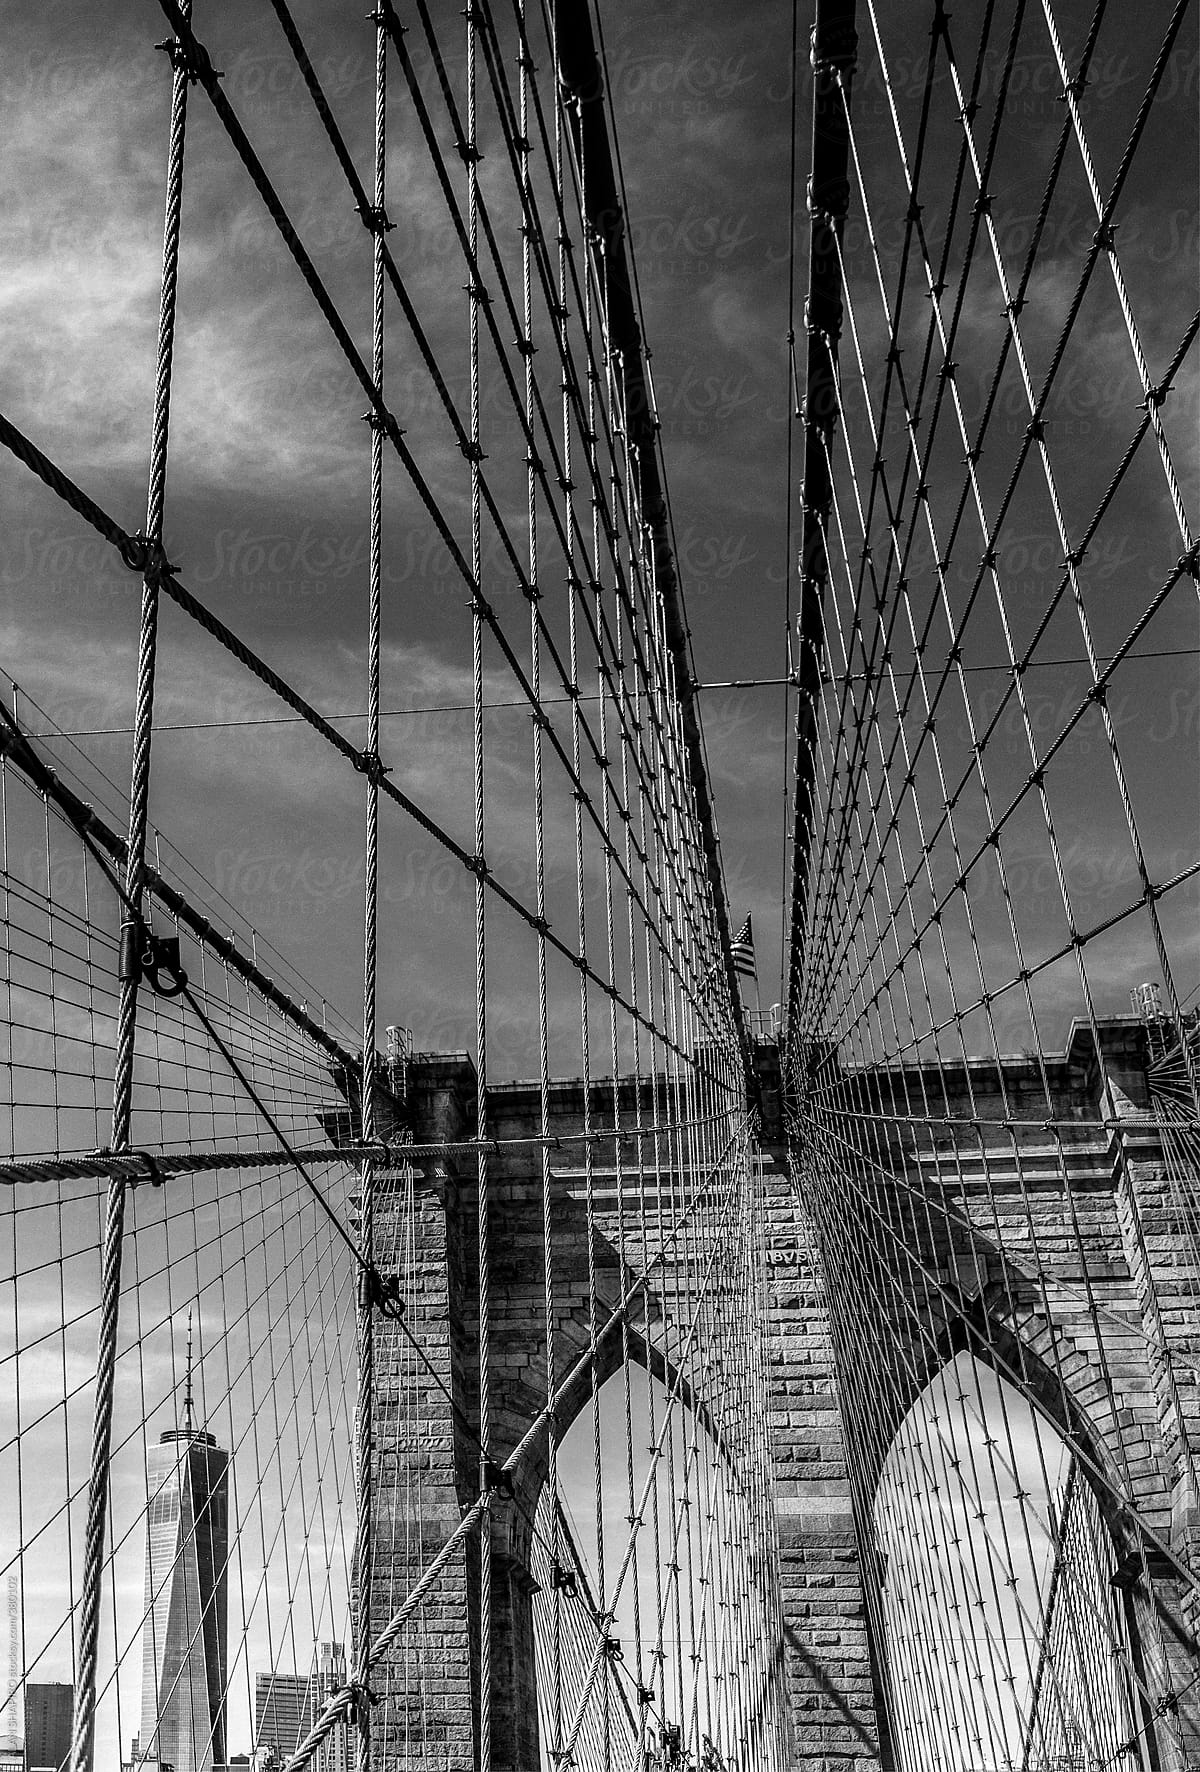 Brooklyn Bridge and Freedom Tower